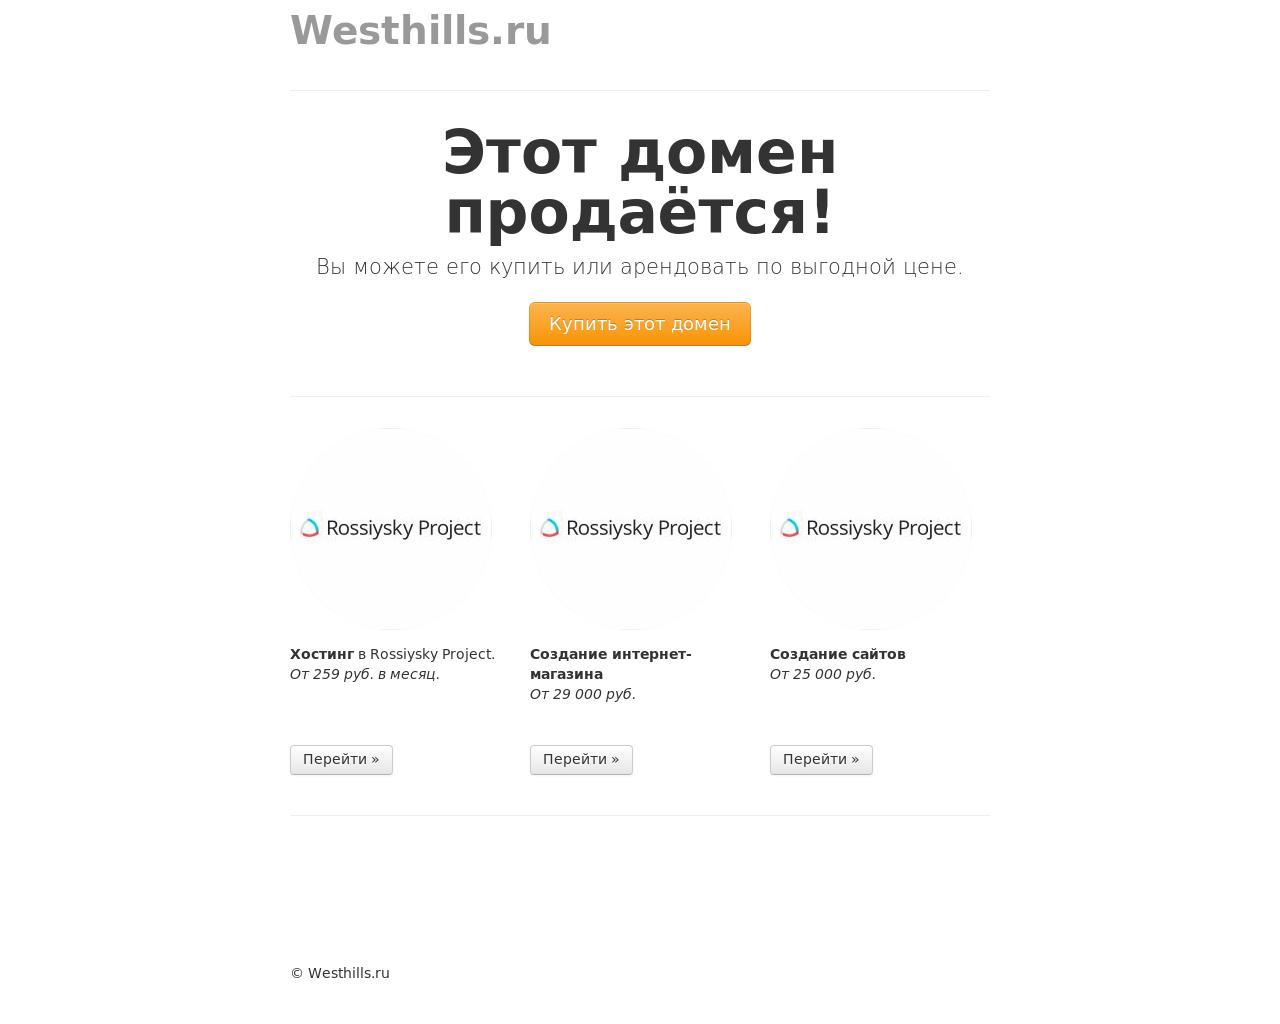 Изображение сайта westhills.ru в разрешении 1280x1024